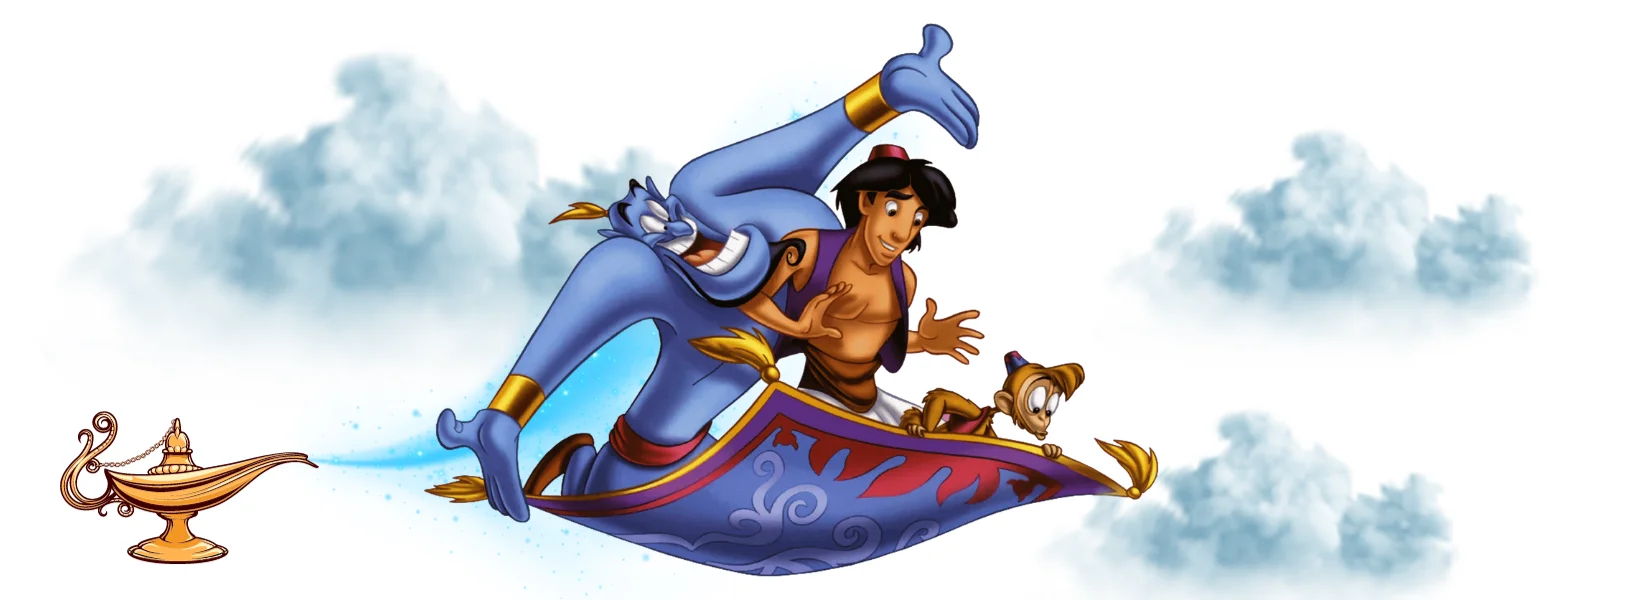 História infantil - Histórias de Aventura - A História de Aladdin